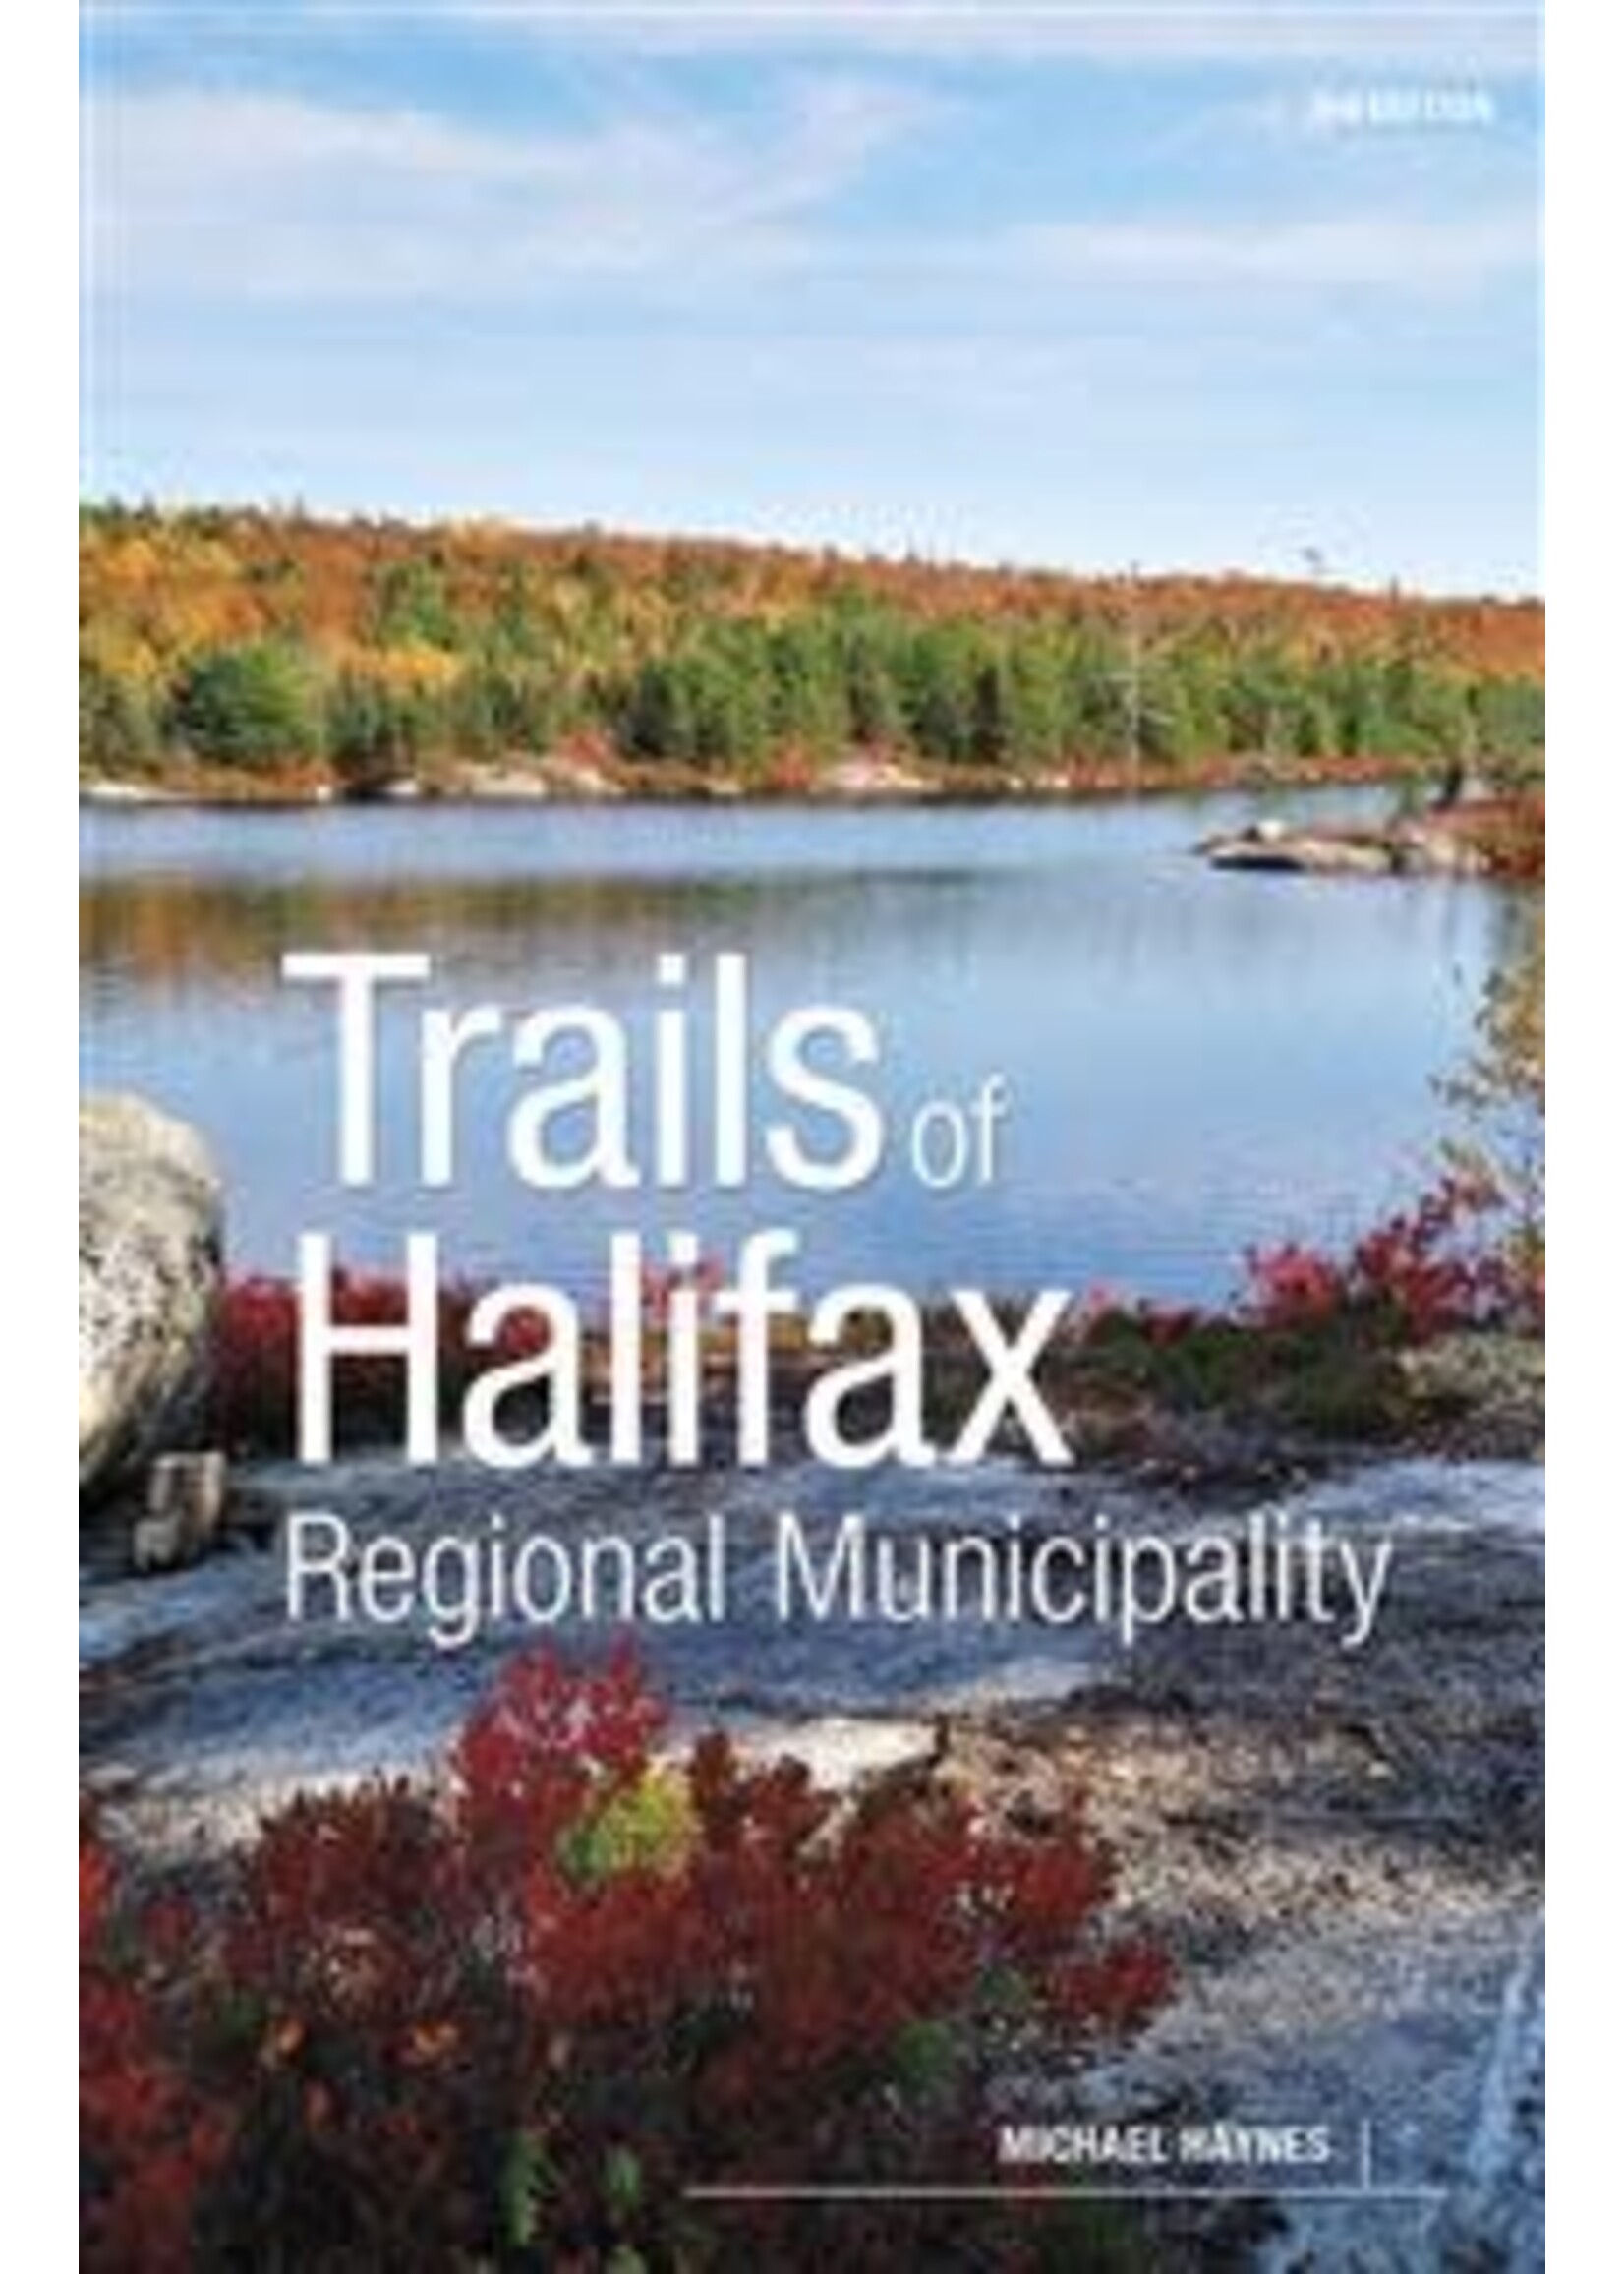 Trails of Halifax Regional Municipality, 3rd ed. by Michael Haynes